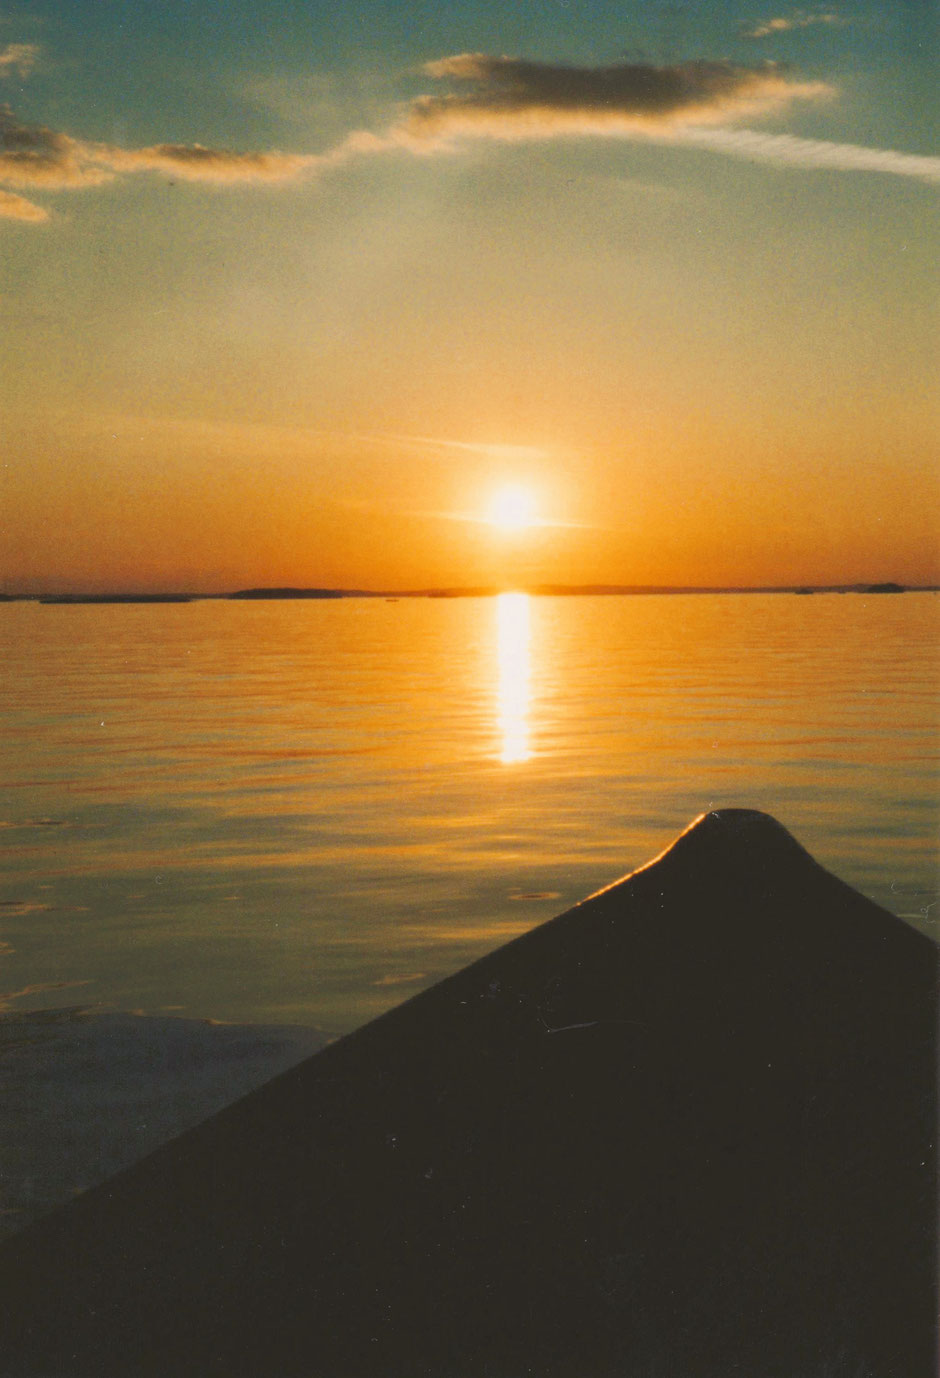 Boot Sonnenuntergang Finnland